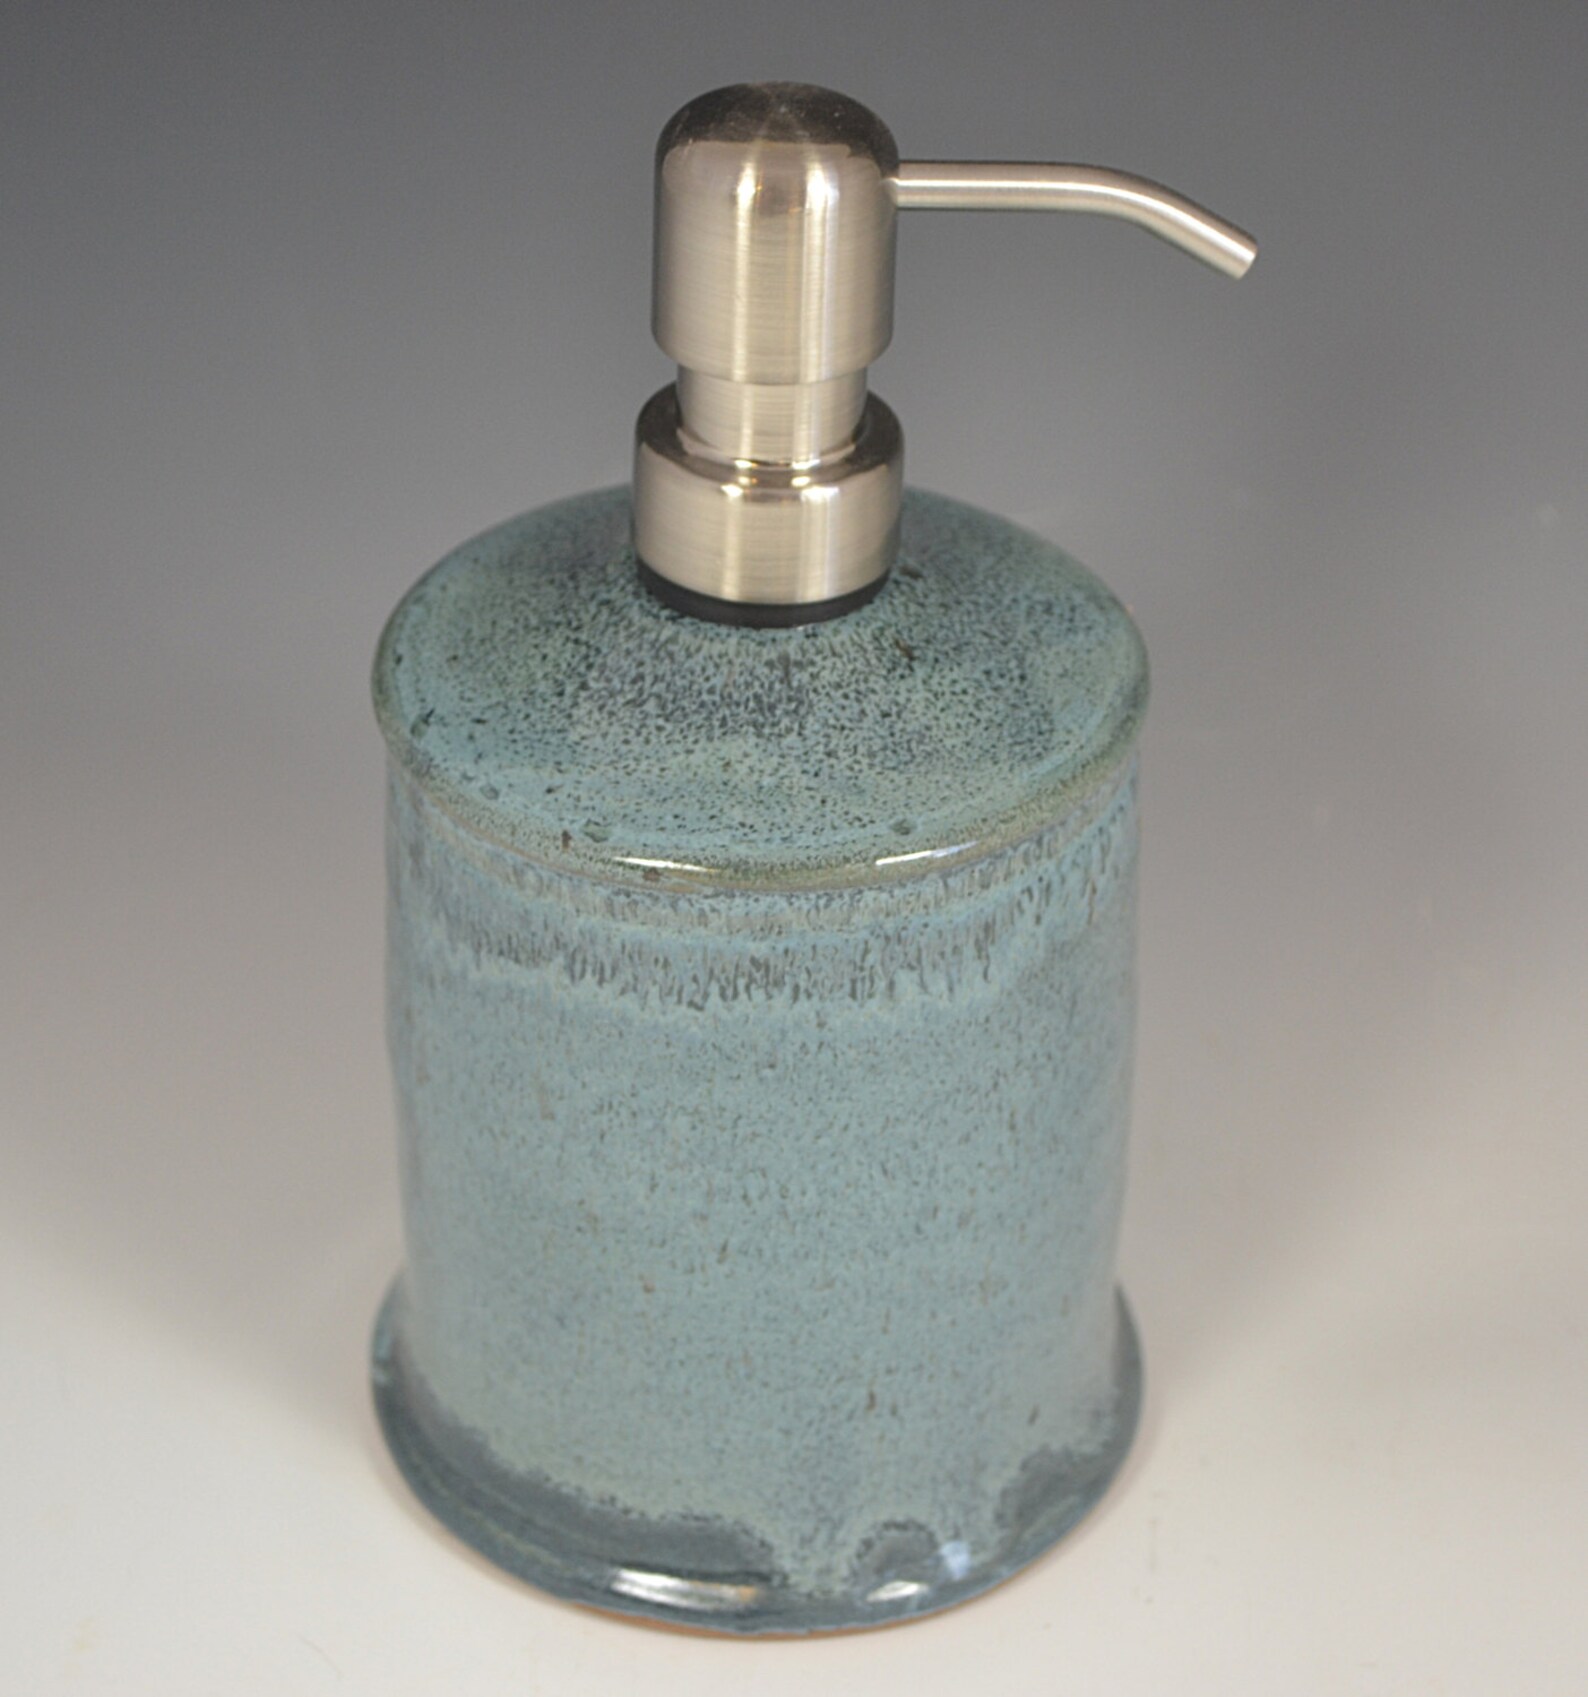 Light Blue Soap Dispenser soap dispenser bathroom accessory | Etsy